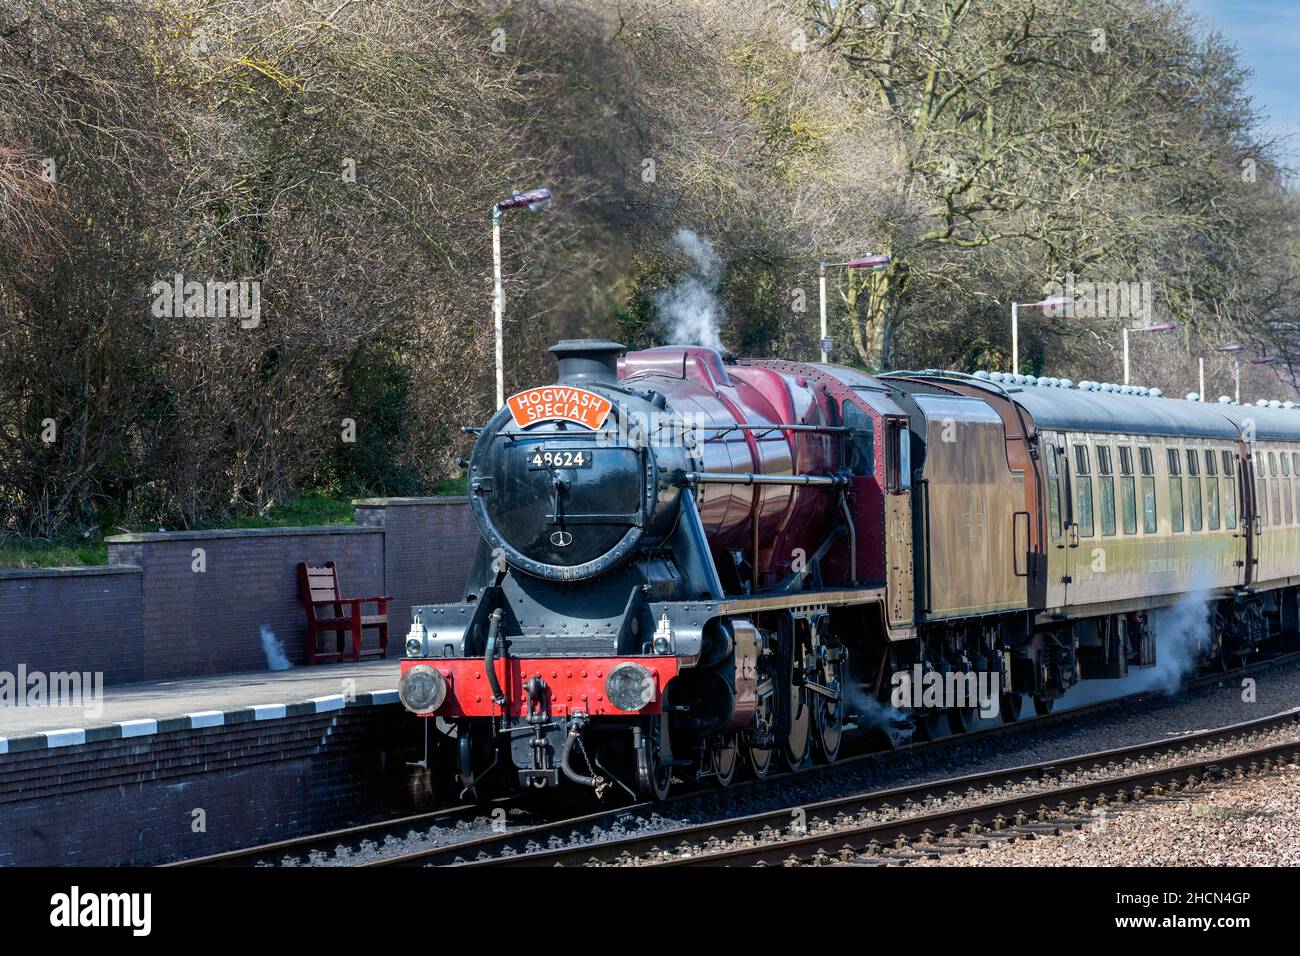 El tren especial Hogwarts es arrastrado por la locomotora de vapor 48624 clase 8F entrando en la estación de Loughborough en el Gran Ferrocarril Central - (línea principal de ferrocarril) - Loughborough, Leicestershire, Inglaterra, Reino Unido. Foto de stock